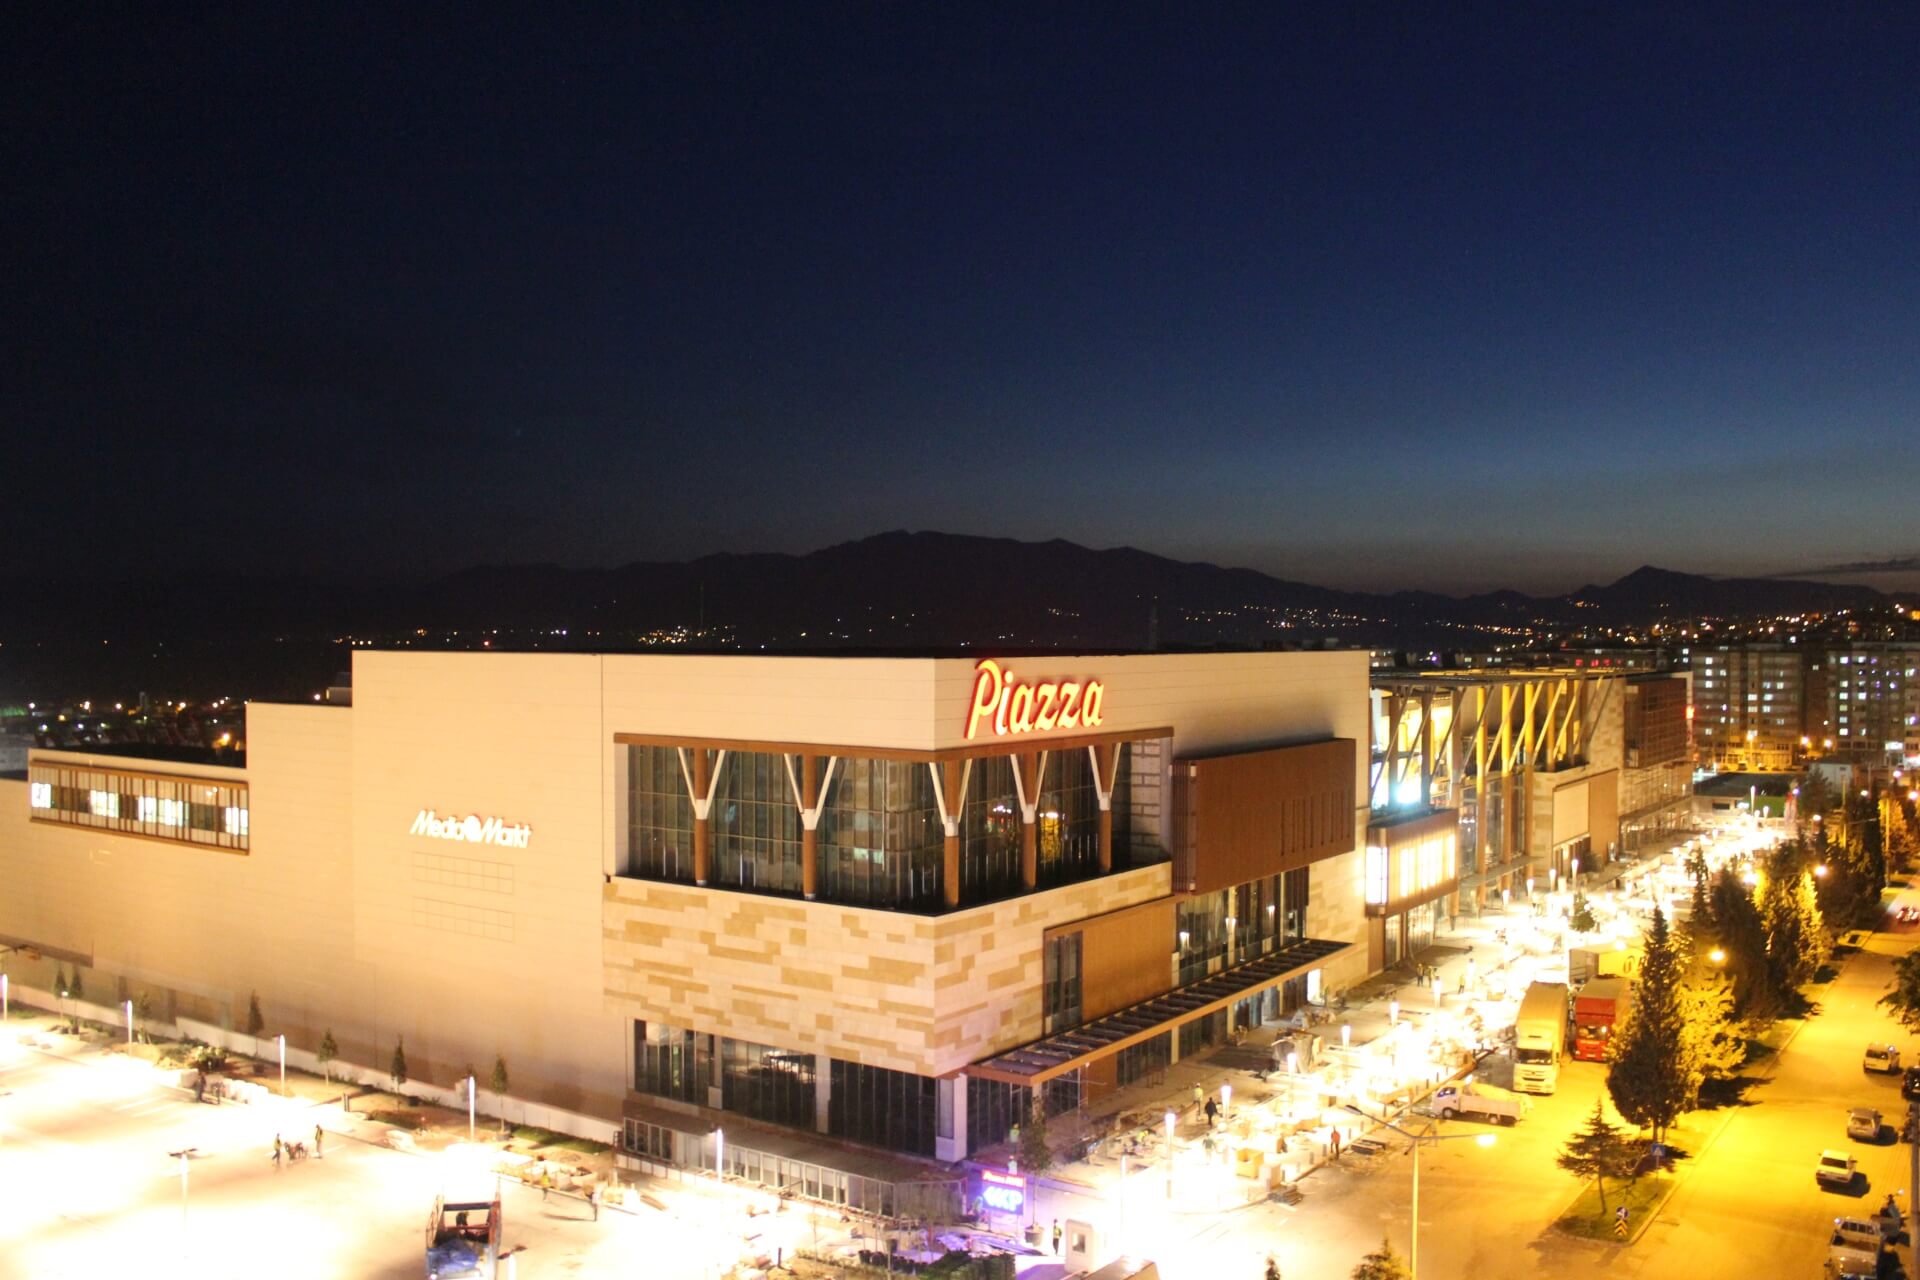 Kahramanmaraş Piazza Shopping Center